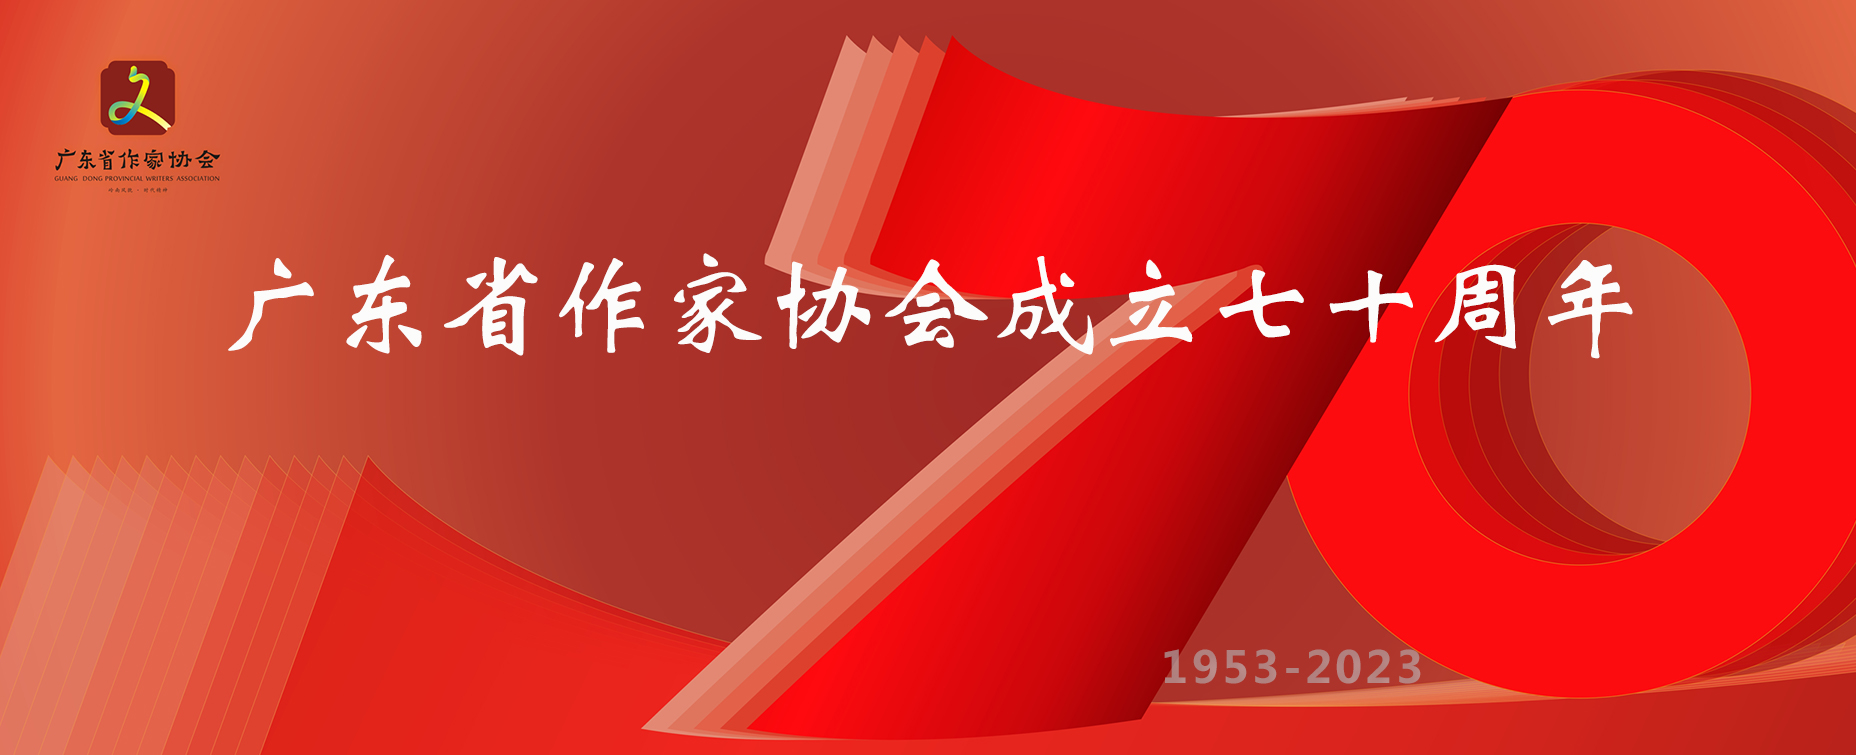 庆祝广东省作家协会成立70周年